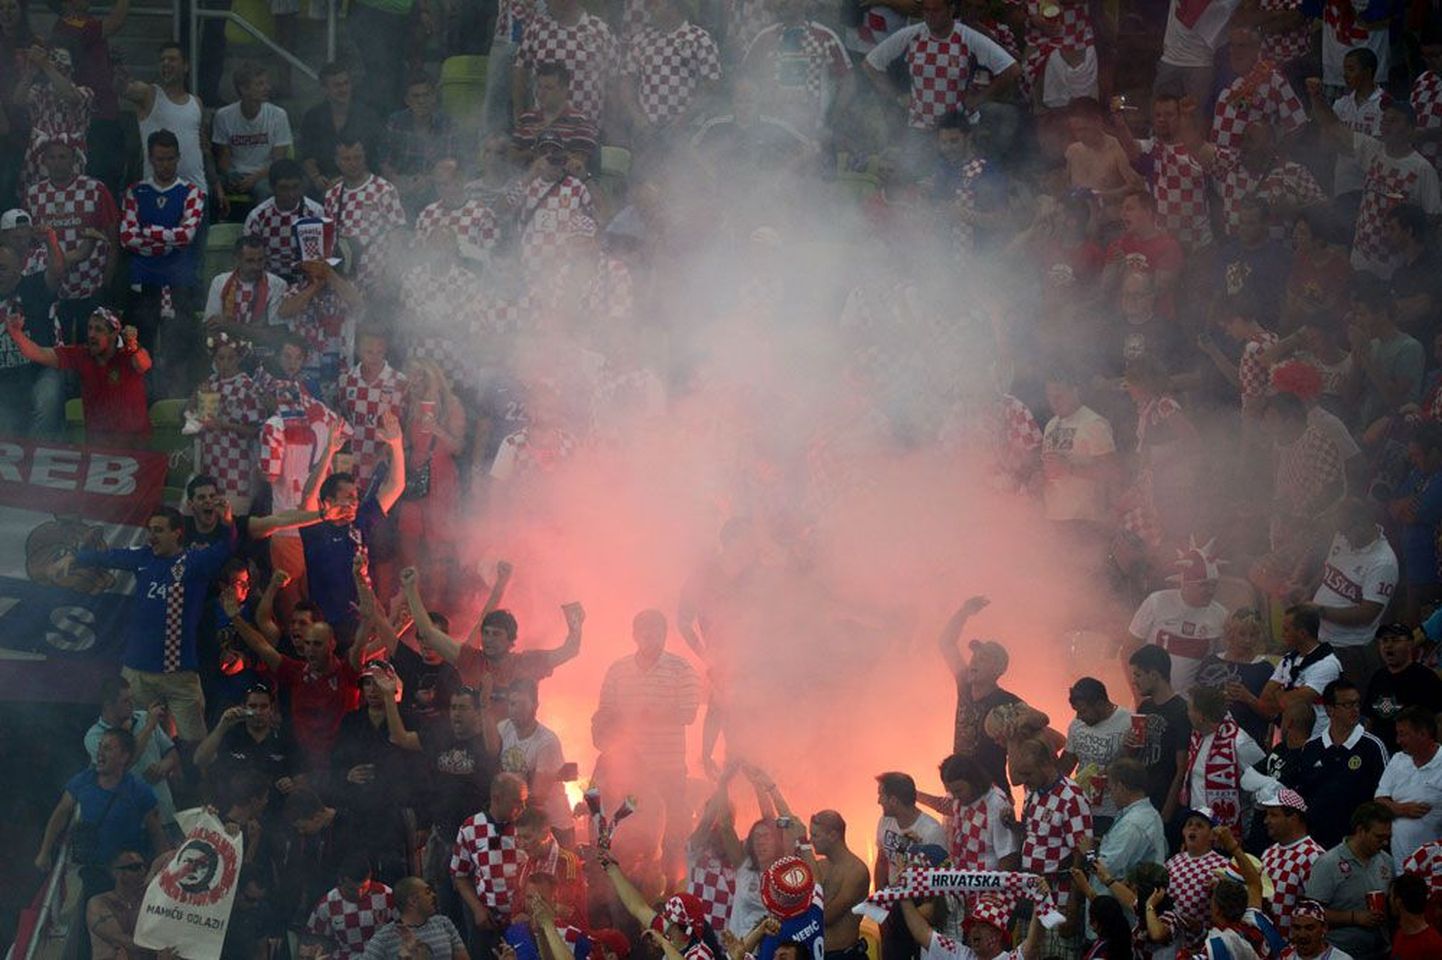 Horvaatia jalgpallifännid elavad oma koondisele alati maruliselt kaasa. Viimasel Euroopa meistrivõistluste finaalturniiril tehti nii välku kui pauku.